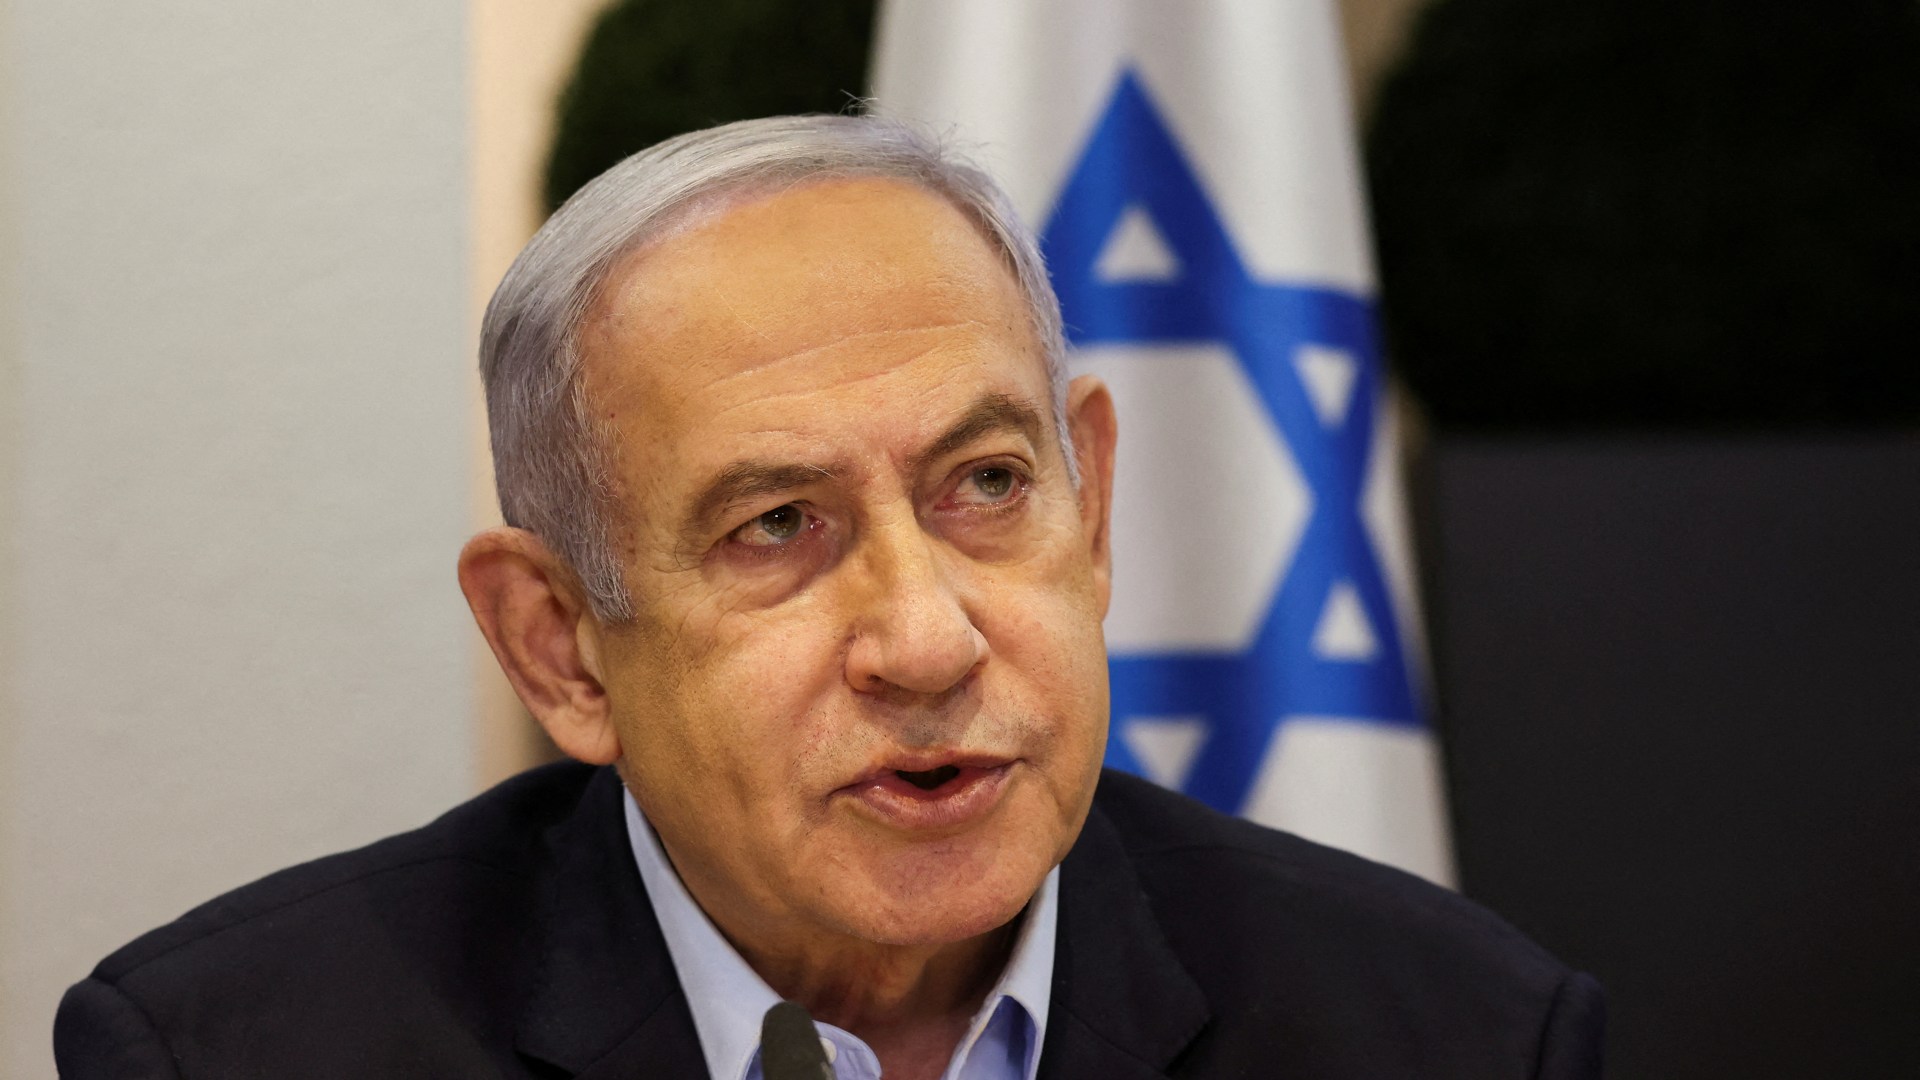 El gabinete de guerra de Israel se reúne ante la amenaza de un ataque “inminente” por parte de Irán en medio de temores de que la disaster en Oriente Medio pueda derivar en la Tercera Guerra Mundial.